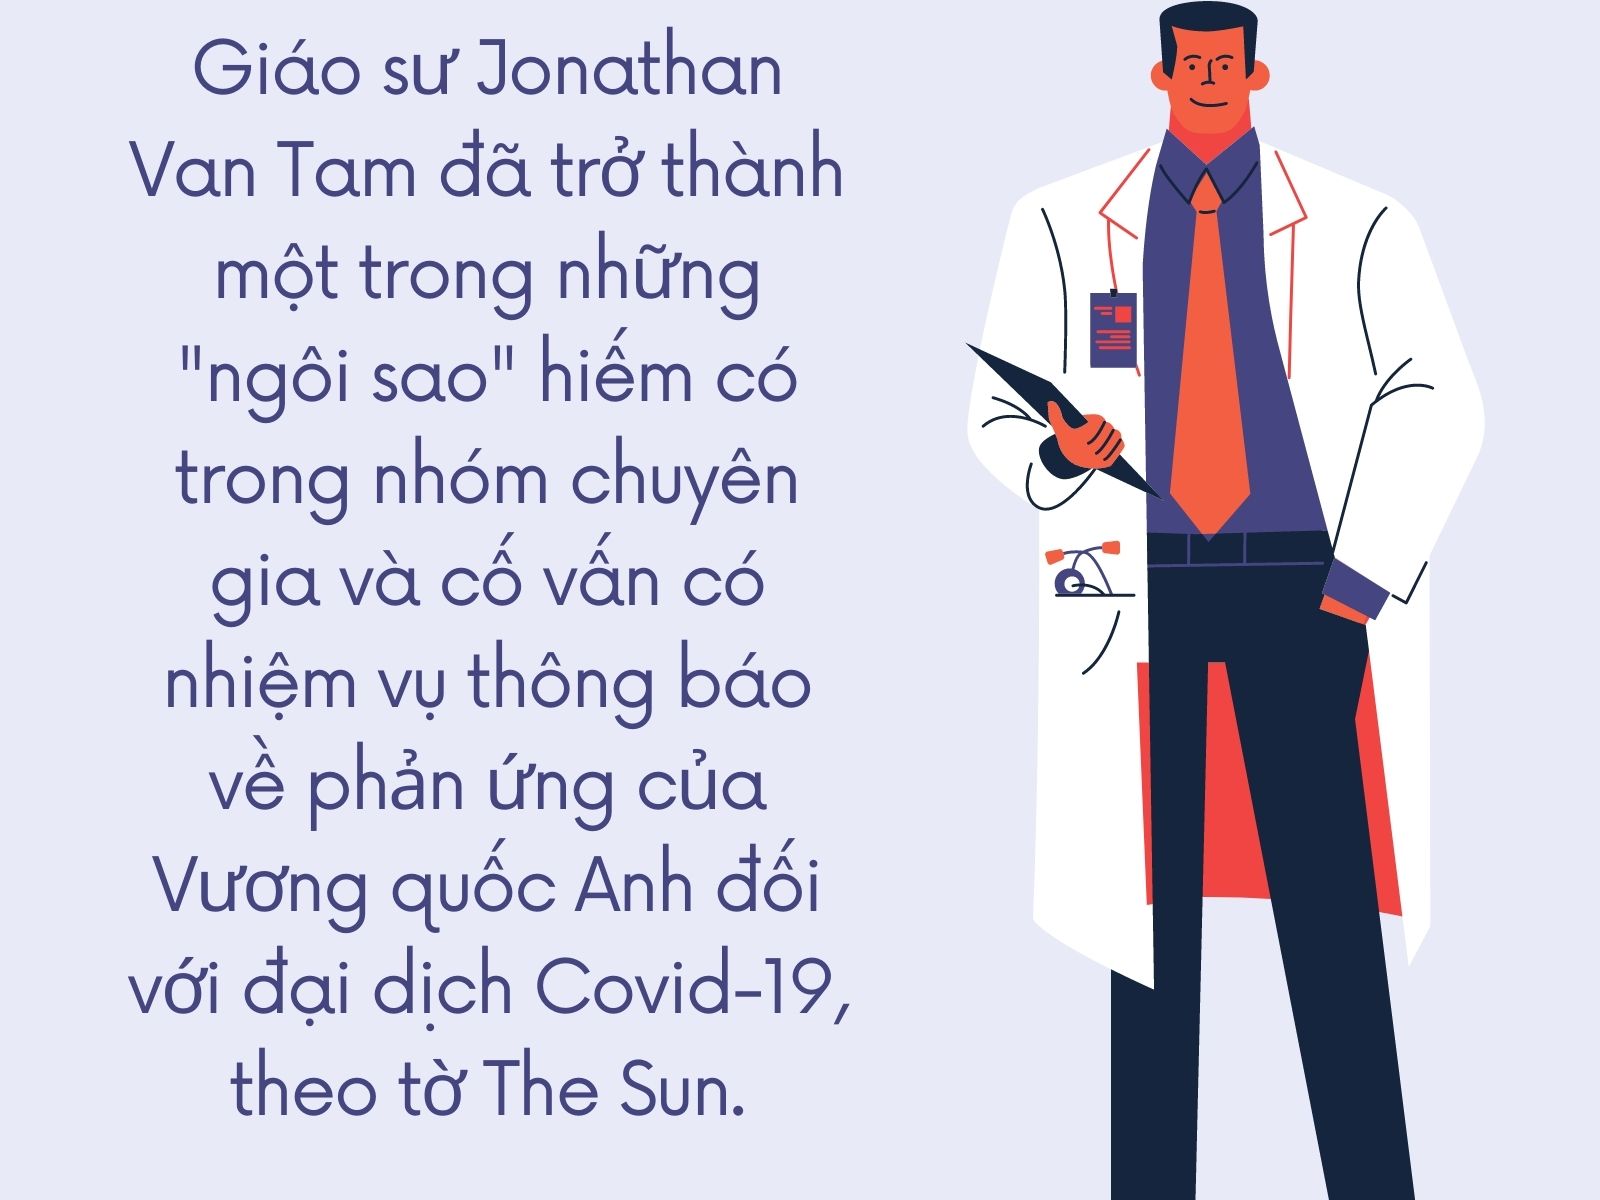 Giáo sư Jonathan Van Tam: &quot;Người hùng&quot; gốc Việt chống Covid-19 tại Anh - Ảnh 1.